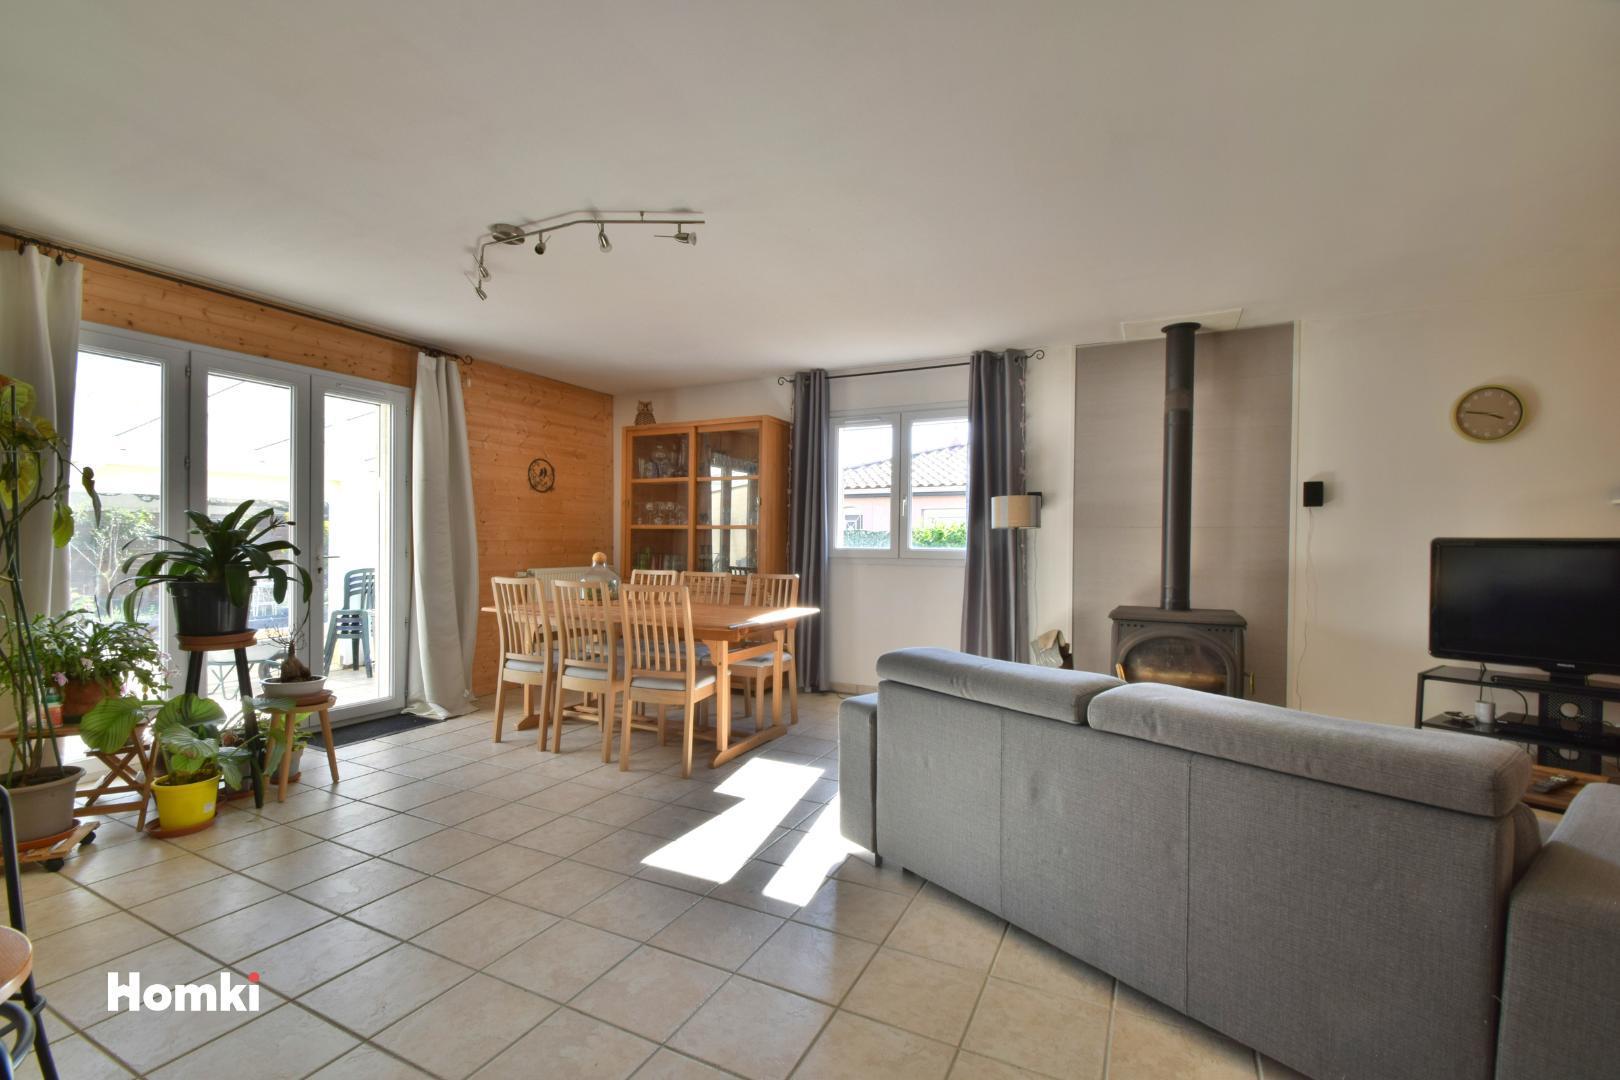 Homki - Vente Maison/villa  de 133.0 m² à Fenouillet 31150